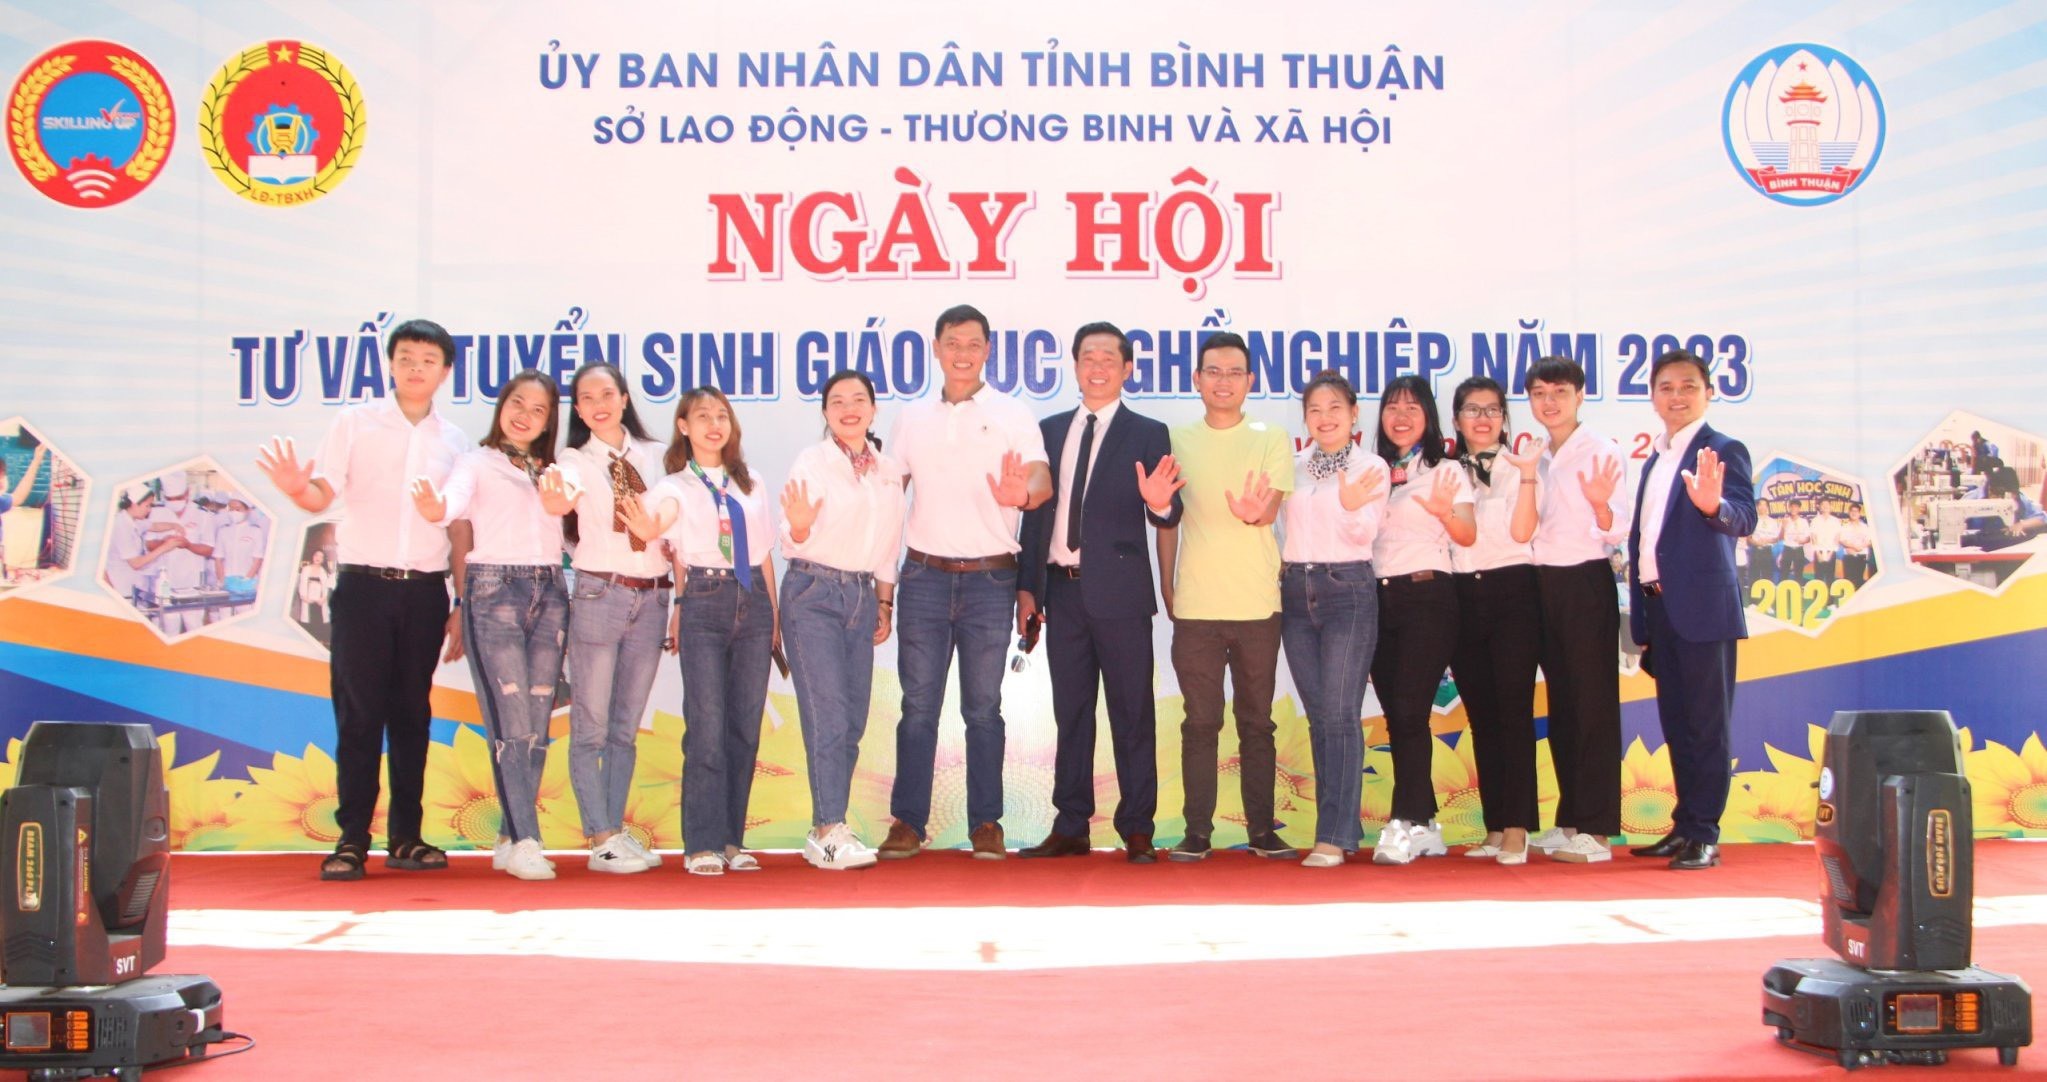 TVNAS - Ngày hội tư vấn tuyển sinh, giáo dục nghề nghiệp tại tỉnh Bình Thuận năm 2023